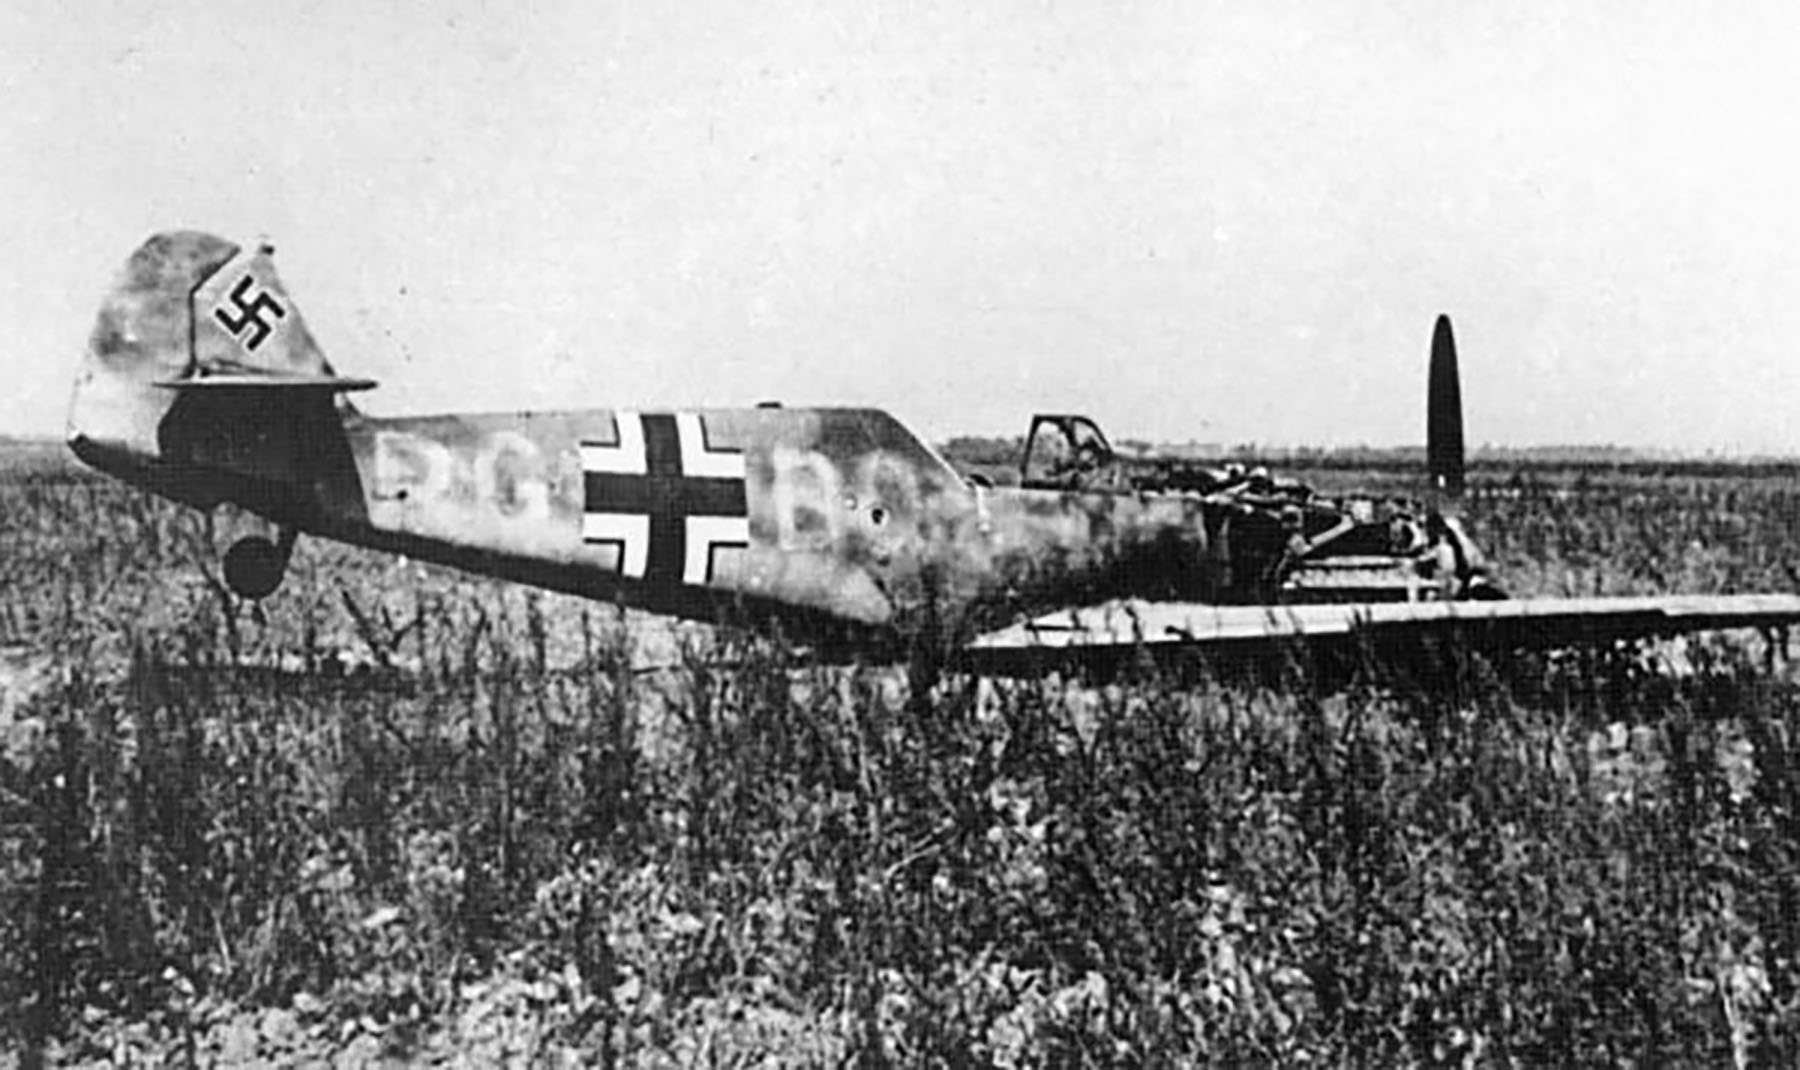 Messerschmitt Bf 109E4 3.JG1 Brown 5 Stkz PG+BQ WNr 5323 force landed Holland Sep 1940 01